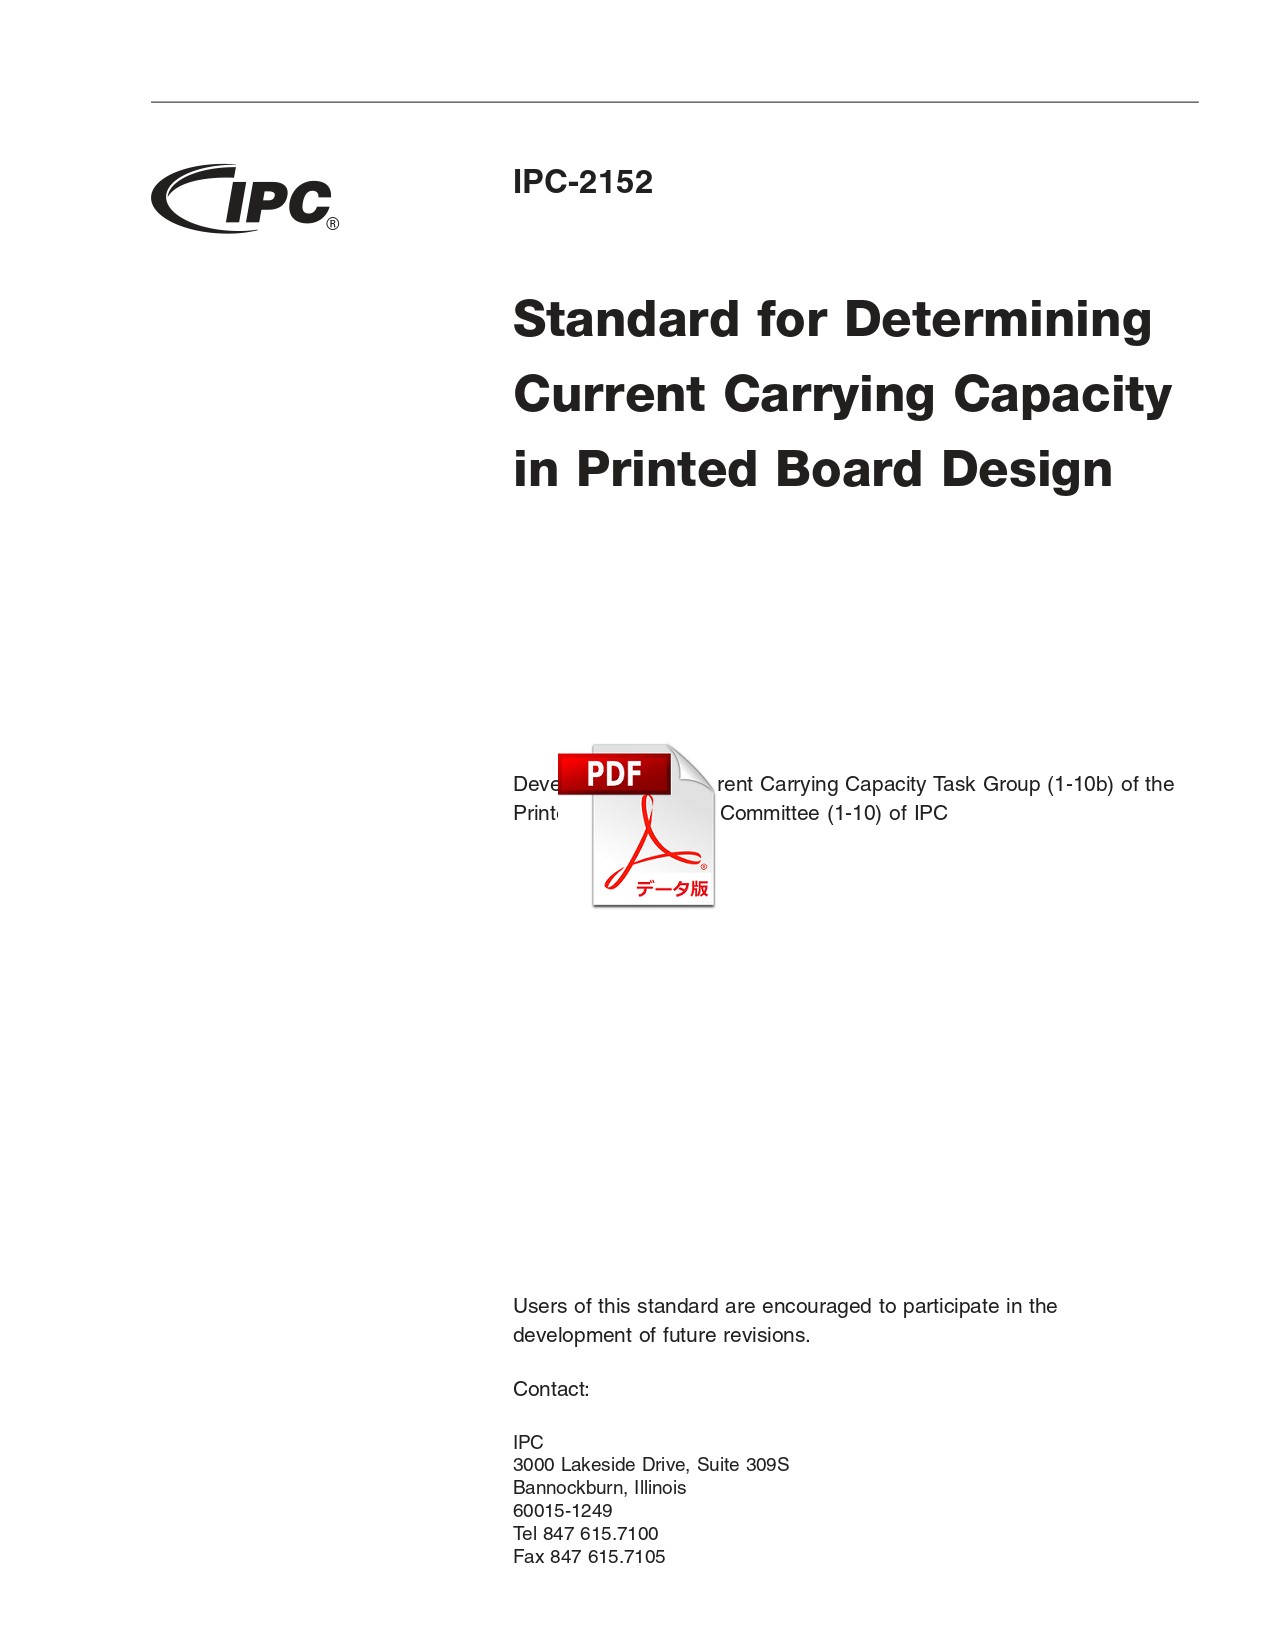 ［英語版］IPC-2152: Standard for Determining Current Carrying Capacity in Printed Board Design